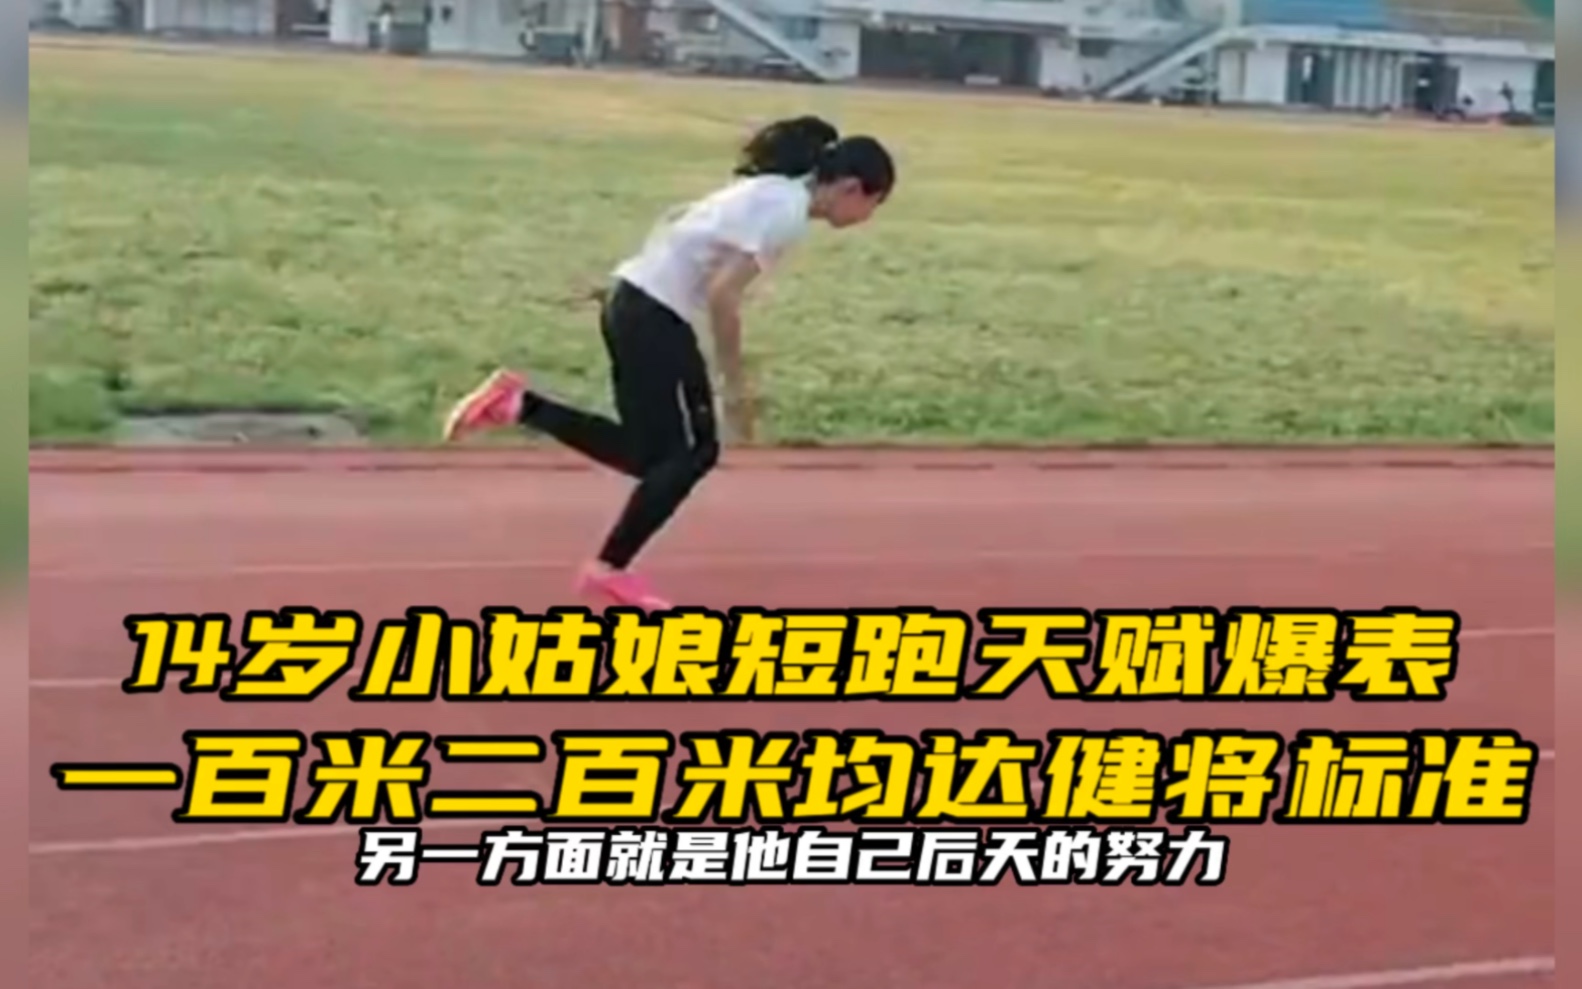 14岁小姑娘短跑天赋爆表，一二百米均达健将标准